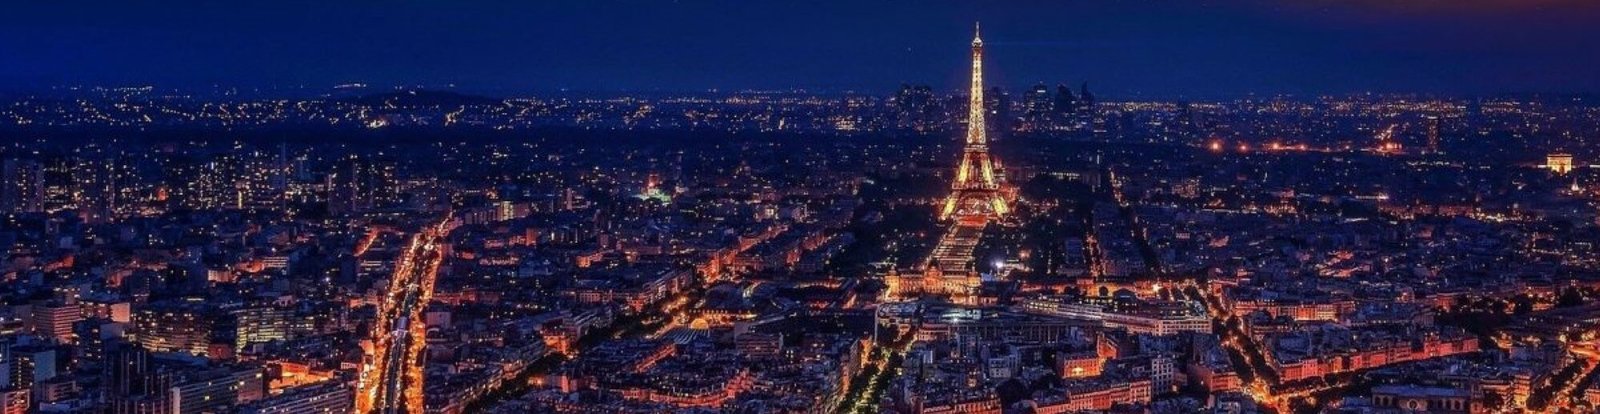 Tour Eiffel illuminée de nuit avec vue sur la ville de Paris et ses lumières